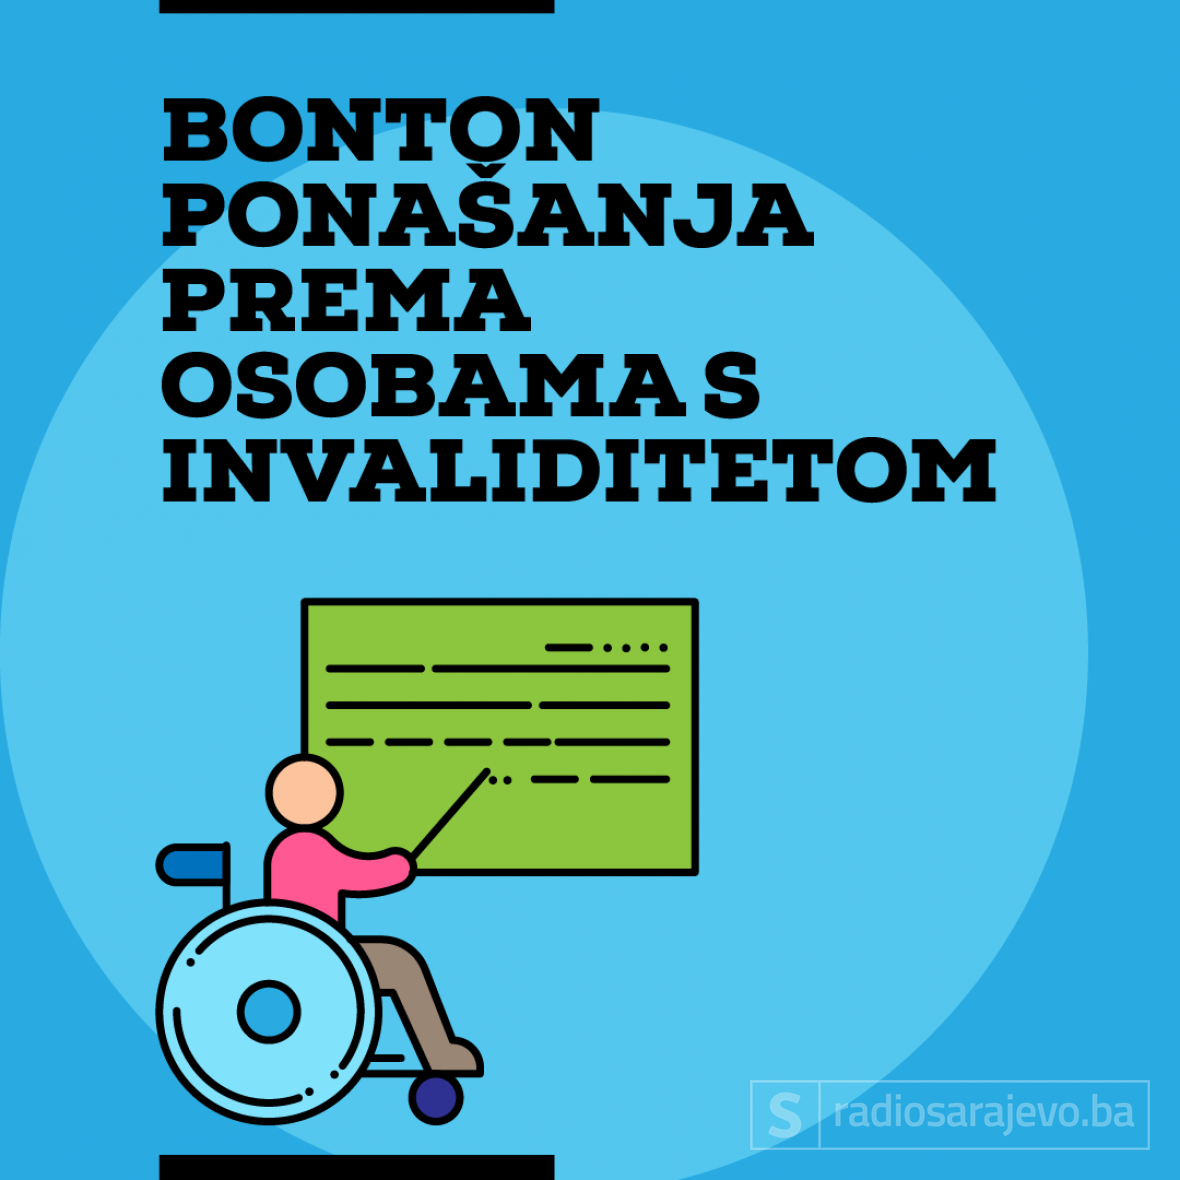 Ilustracija: Azra Kadić, Radiosarajevo.ba /BOnton ponašanja prema osobama s invalididtetom 